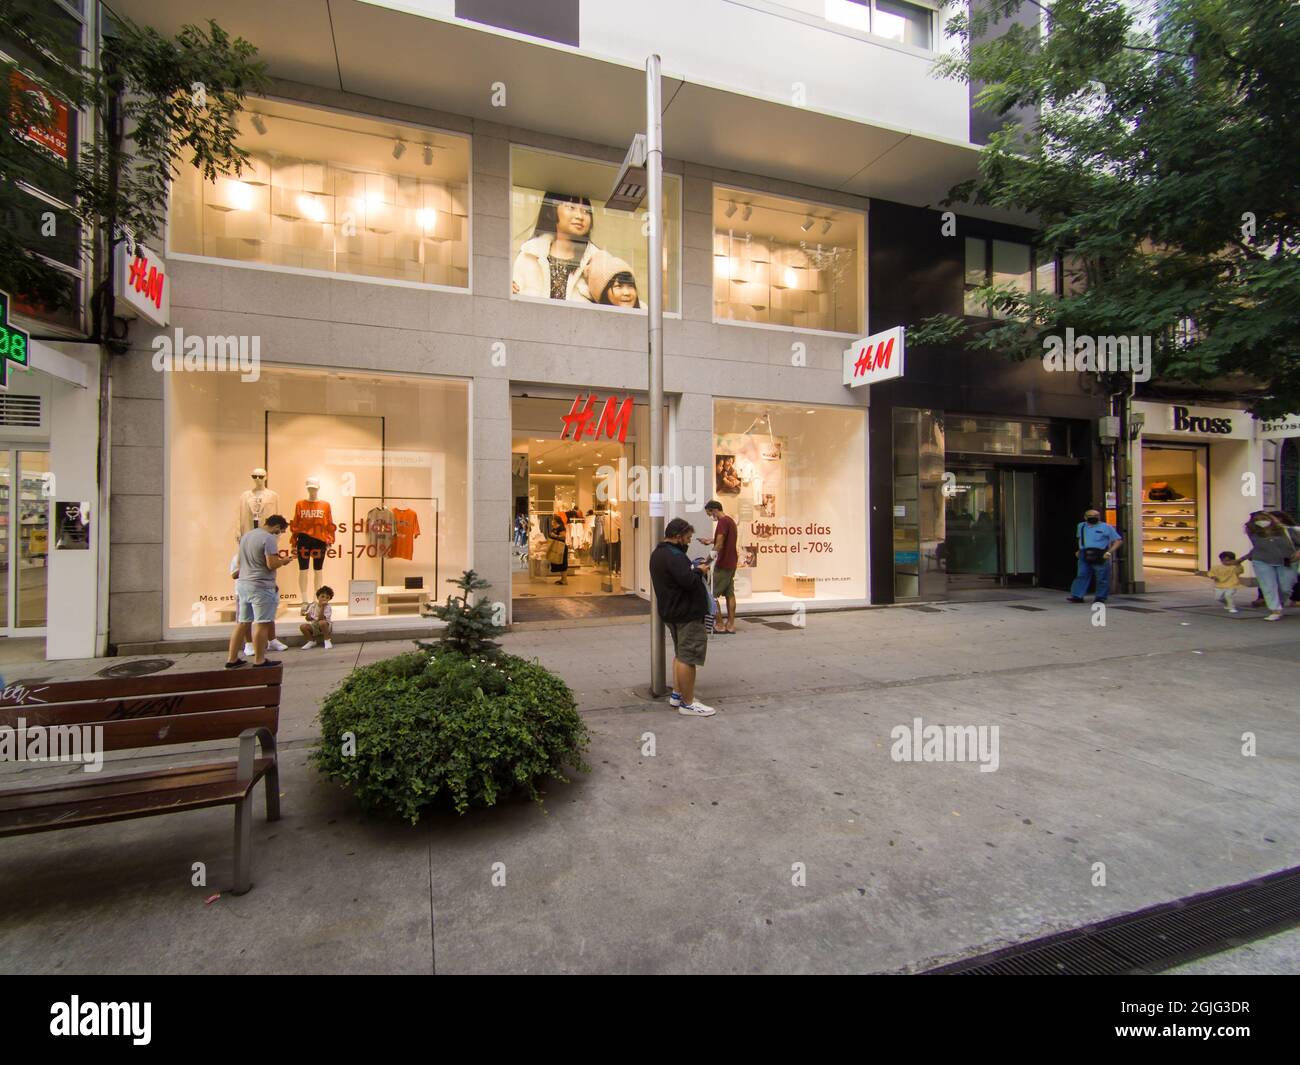 VIGO, ESPAÑA - 23 de agosto de 2021: La fachada de la tienda H&M en Vigo,  España Fotografía de stock - Alamy